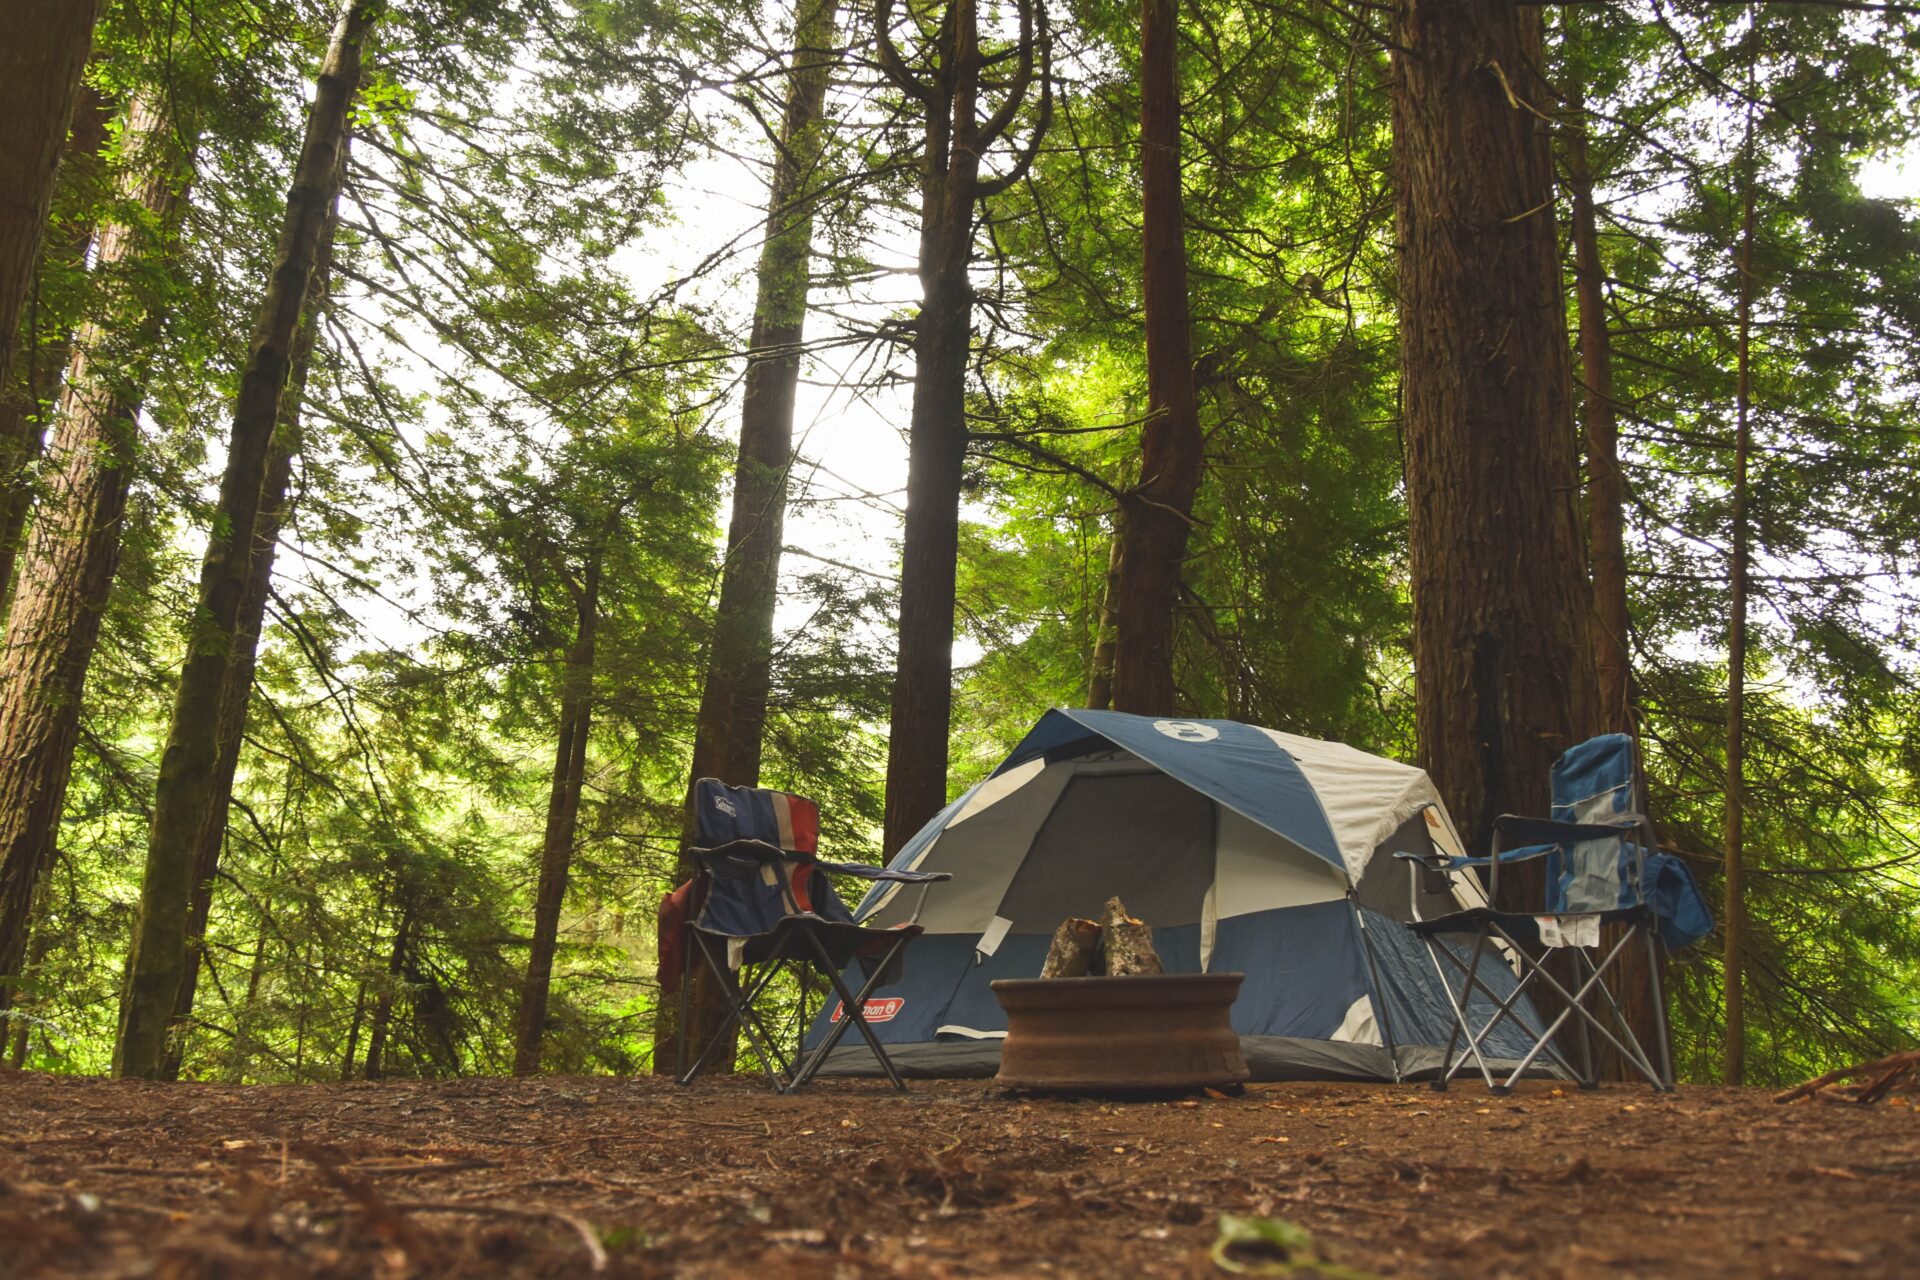 【キャンプ初心者向け】おすすめのキャンプ道具やキャンプ場の選び方を解説